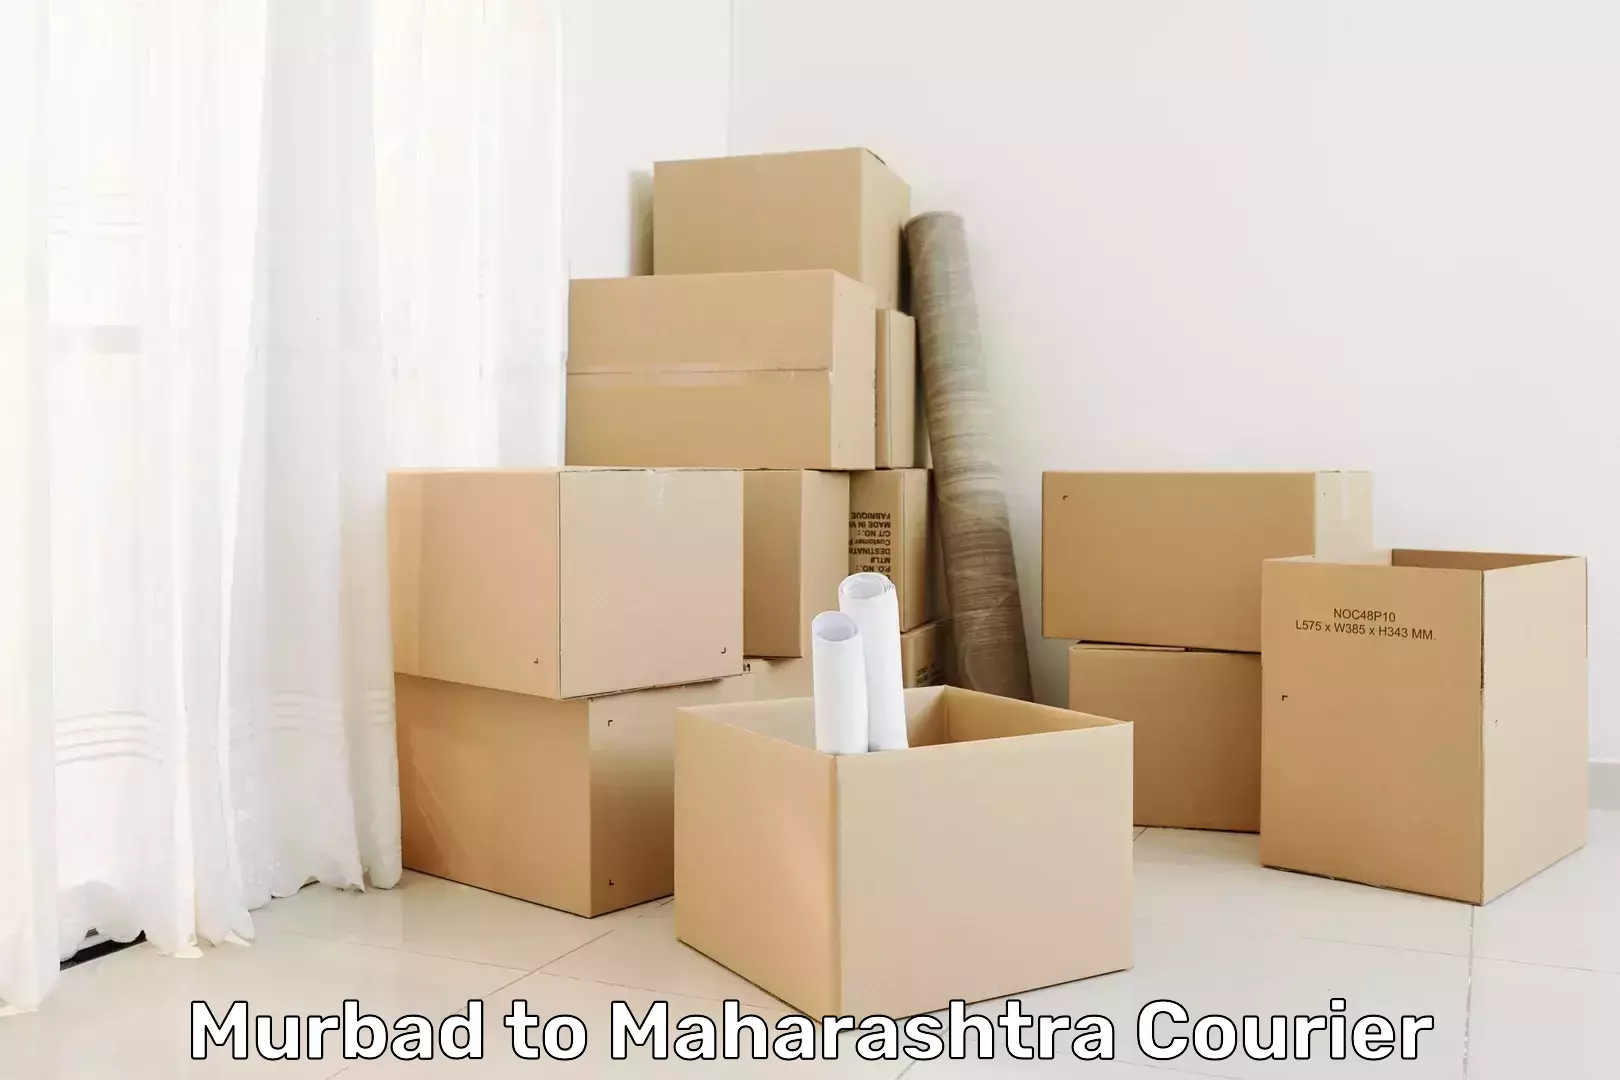 24/7 shipping services Murbad to Mahabaleshwar